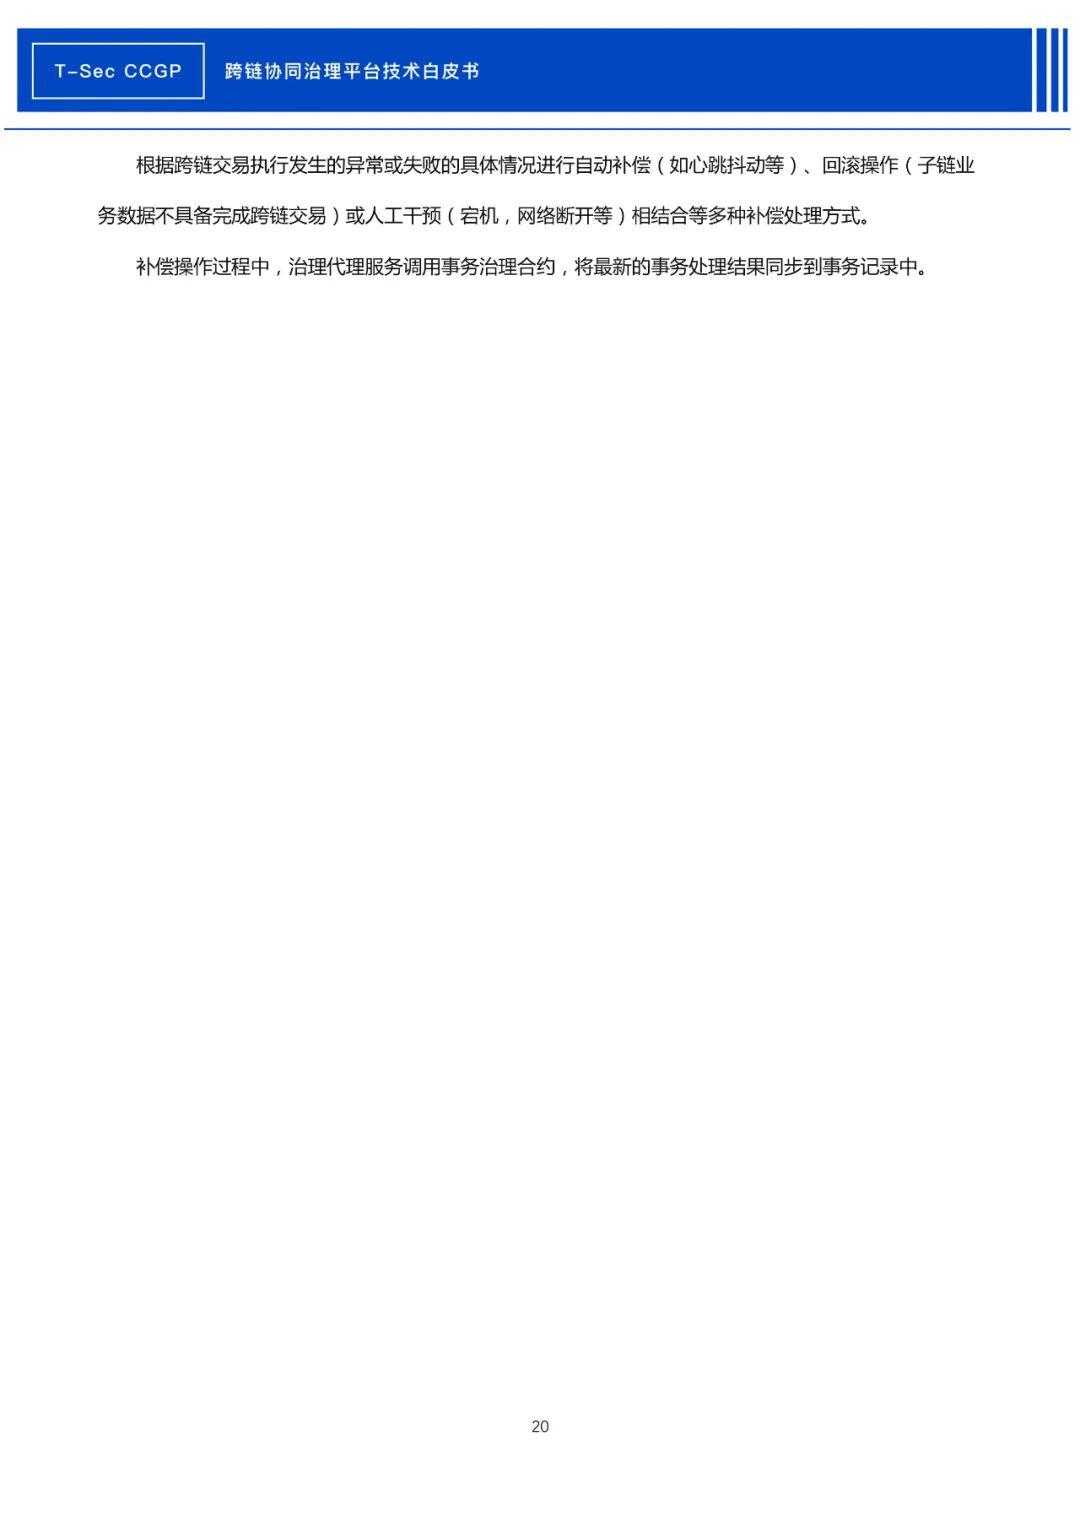 腾讯安全发布《CCGP跨链协同治理平台技术白皮书》